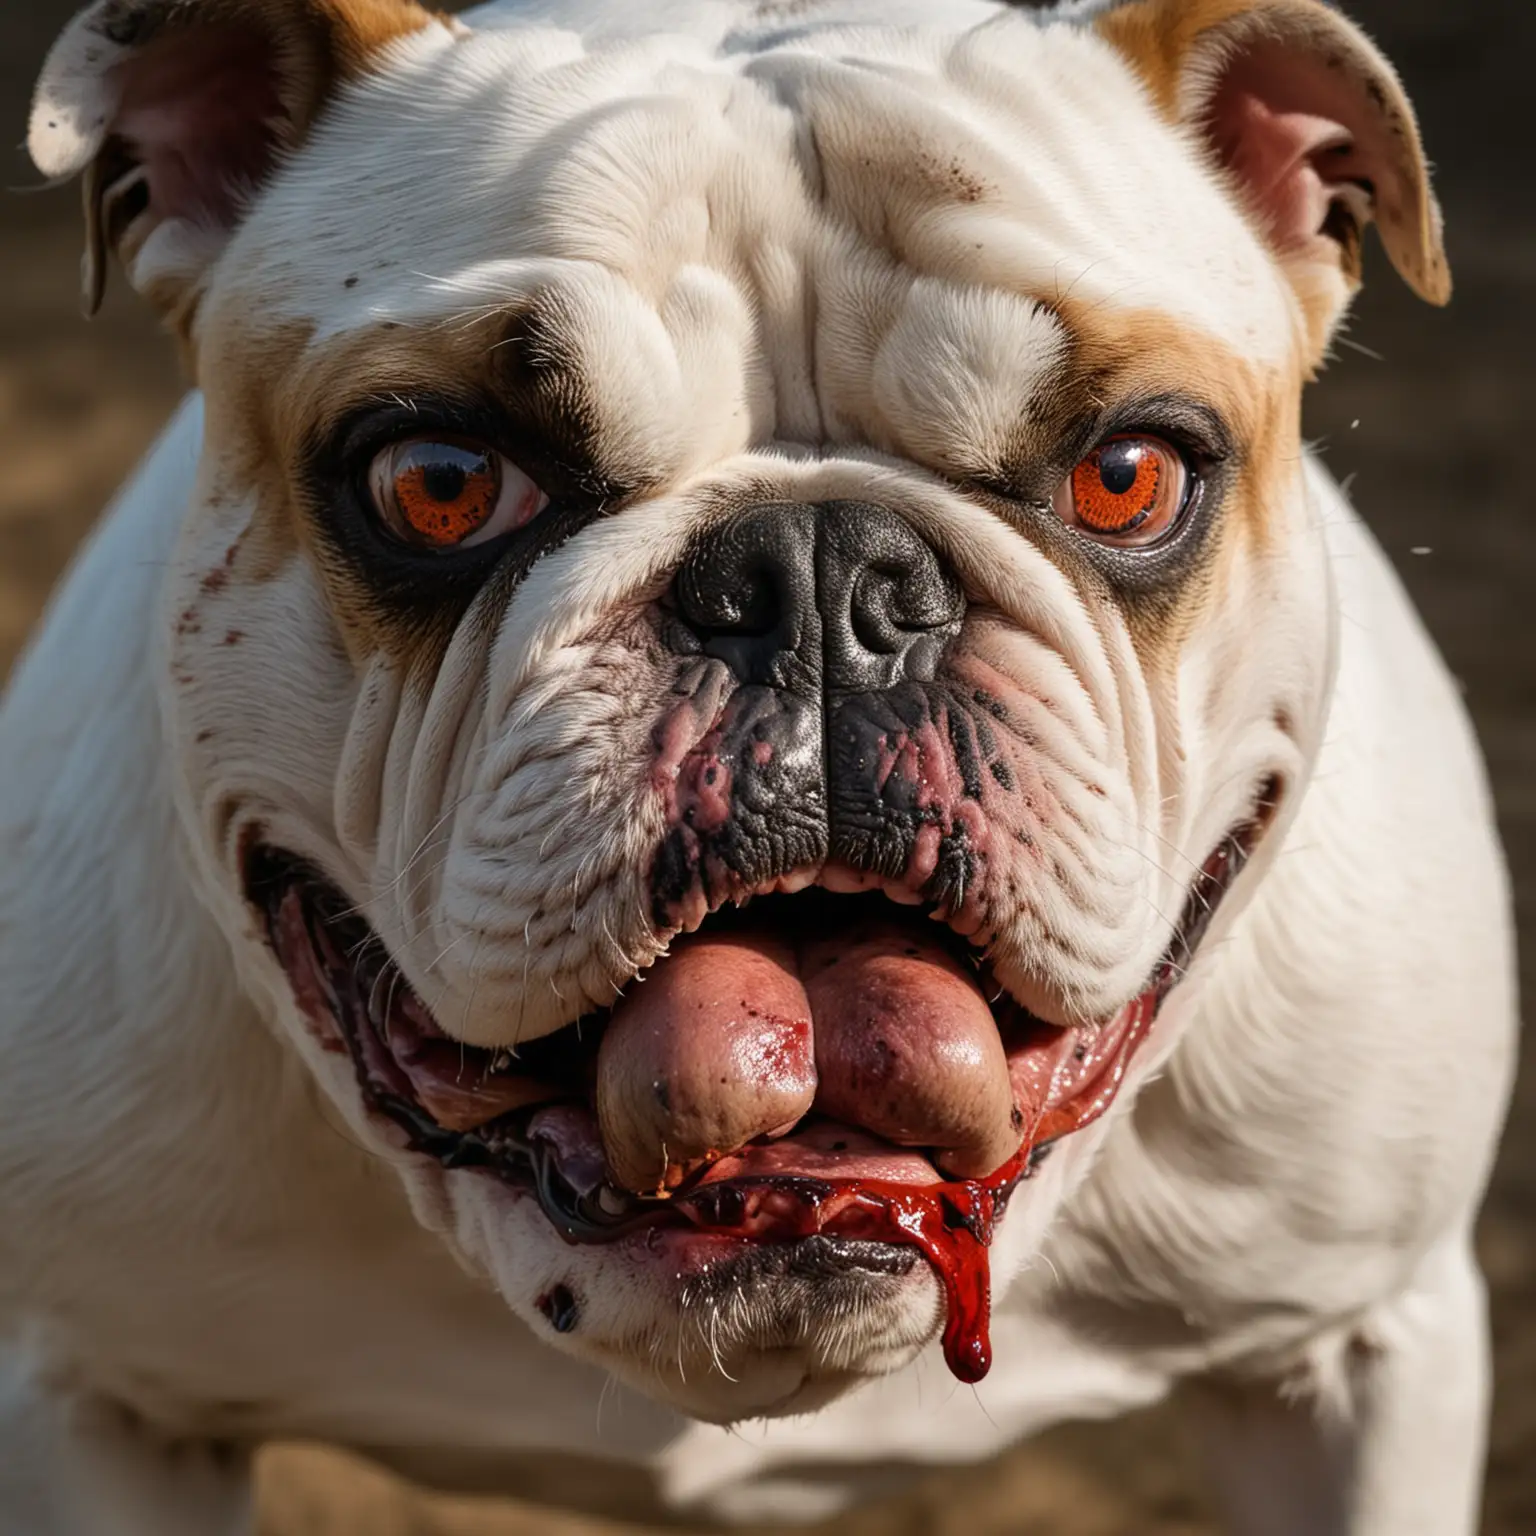 Fierce Bulldog with Bloodshot Eyes Showing Aggression